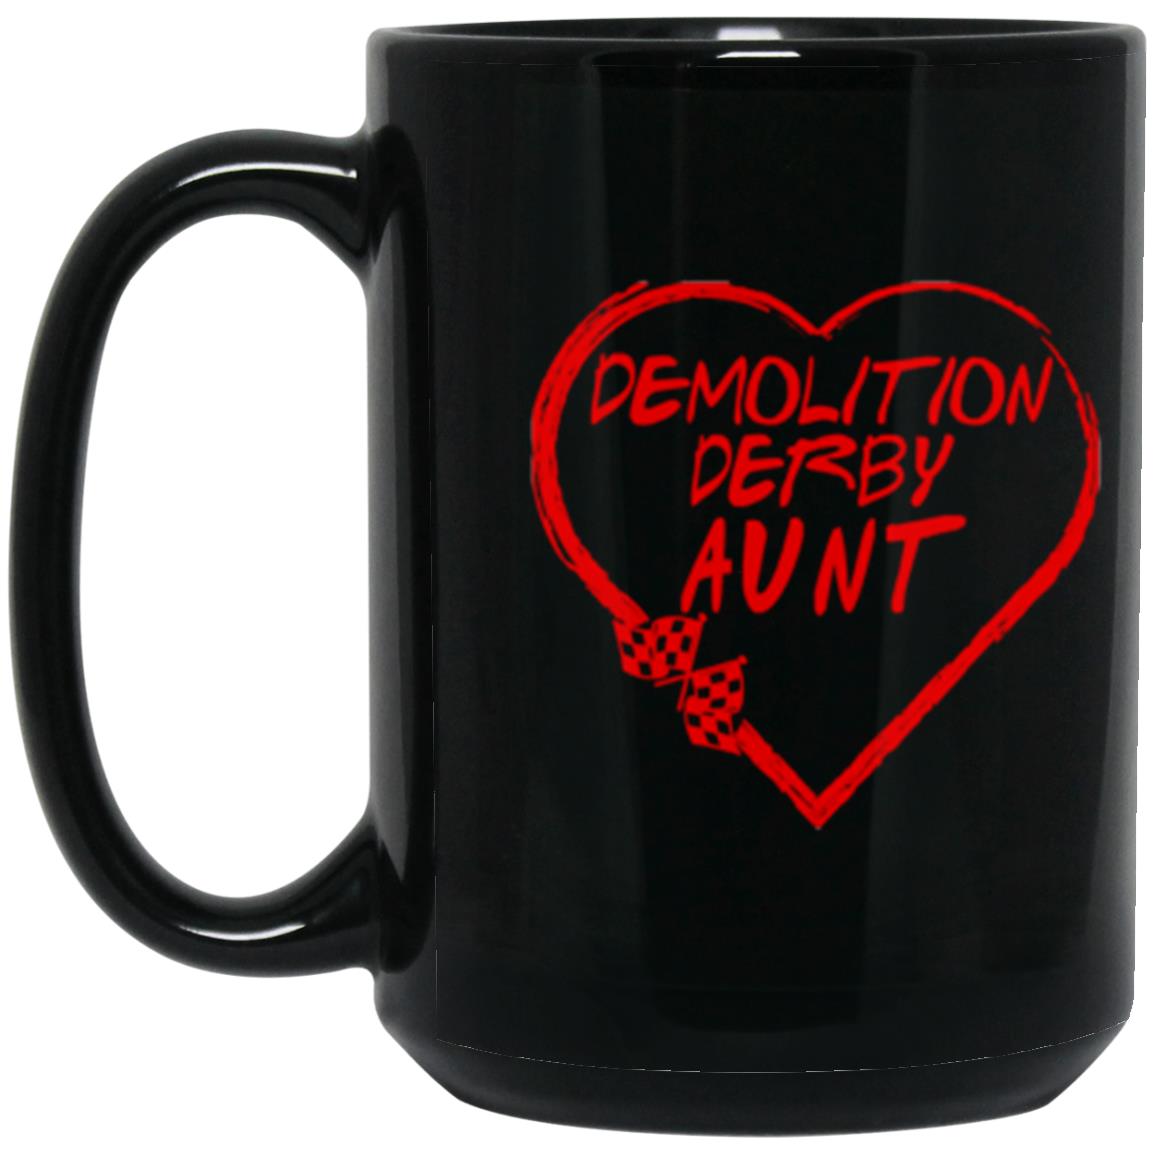 Demolition Derby Aunt Heart 15 oz. Black Mug